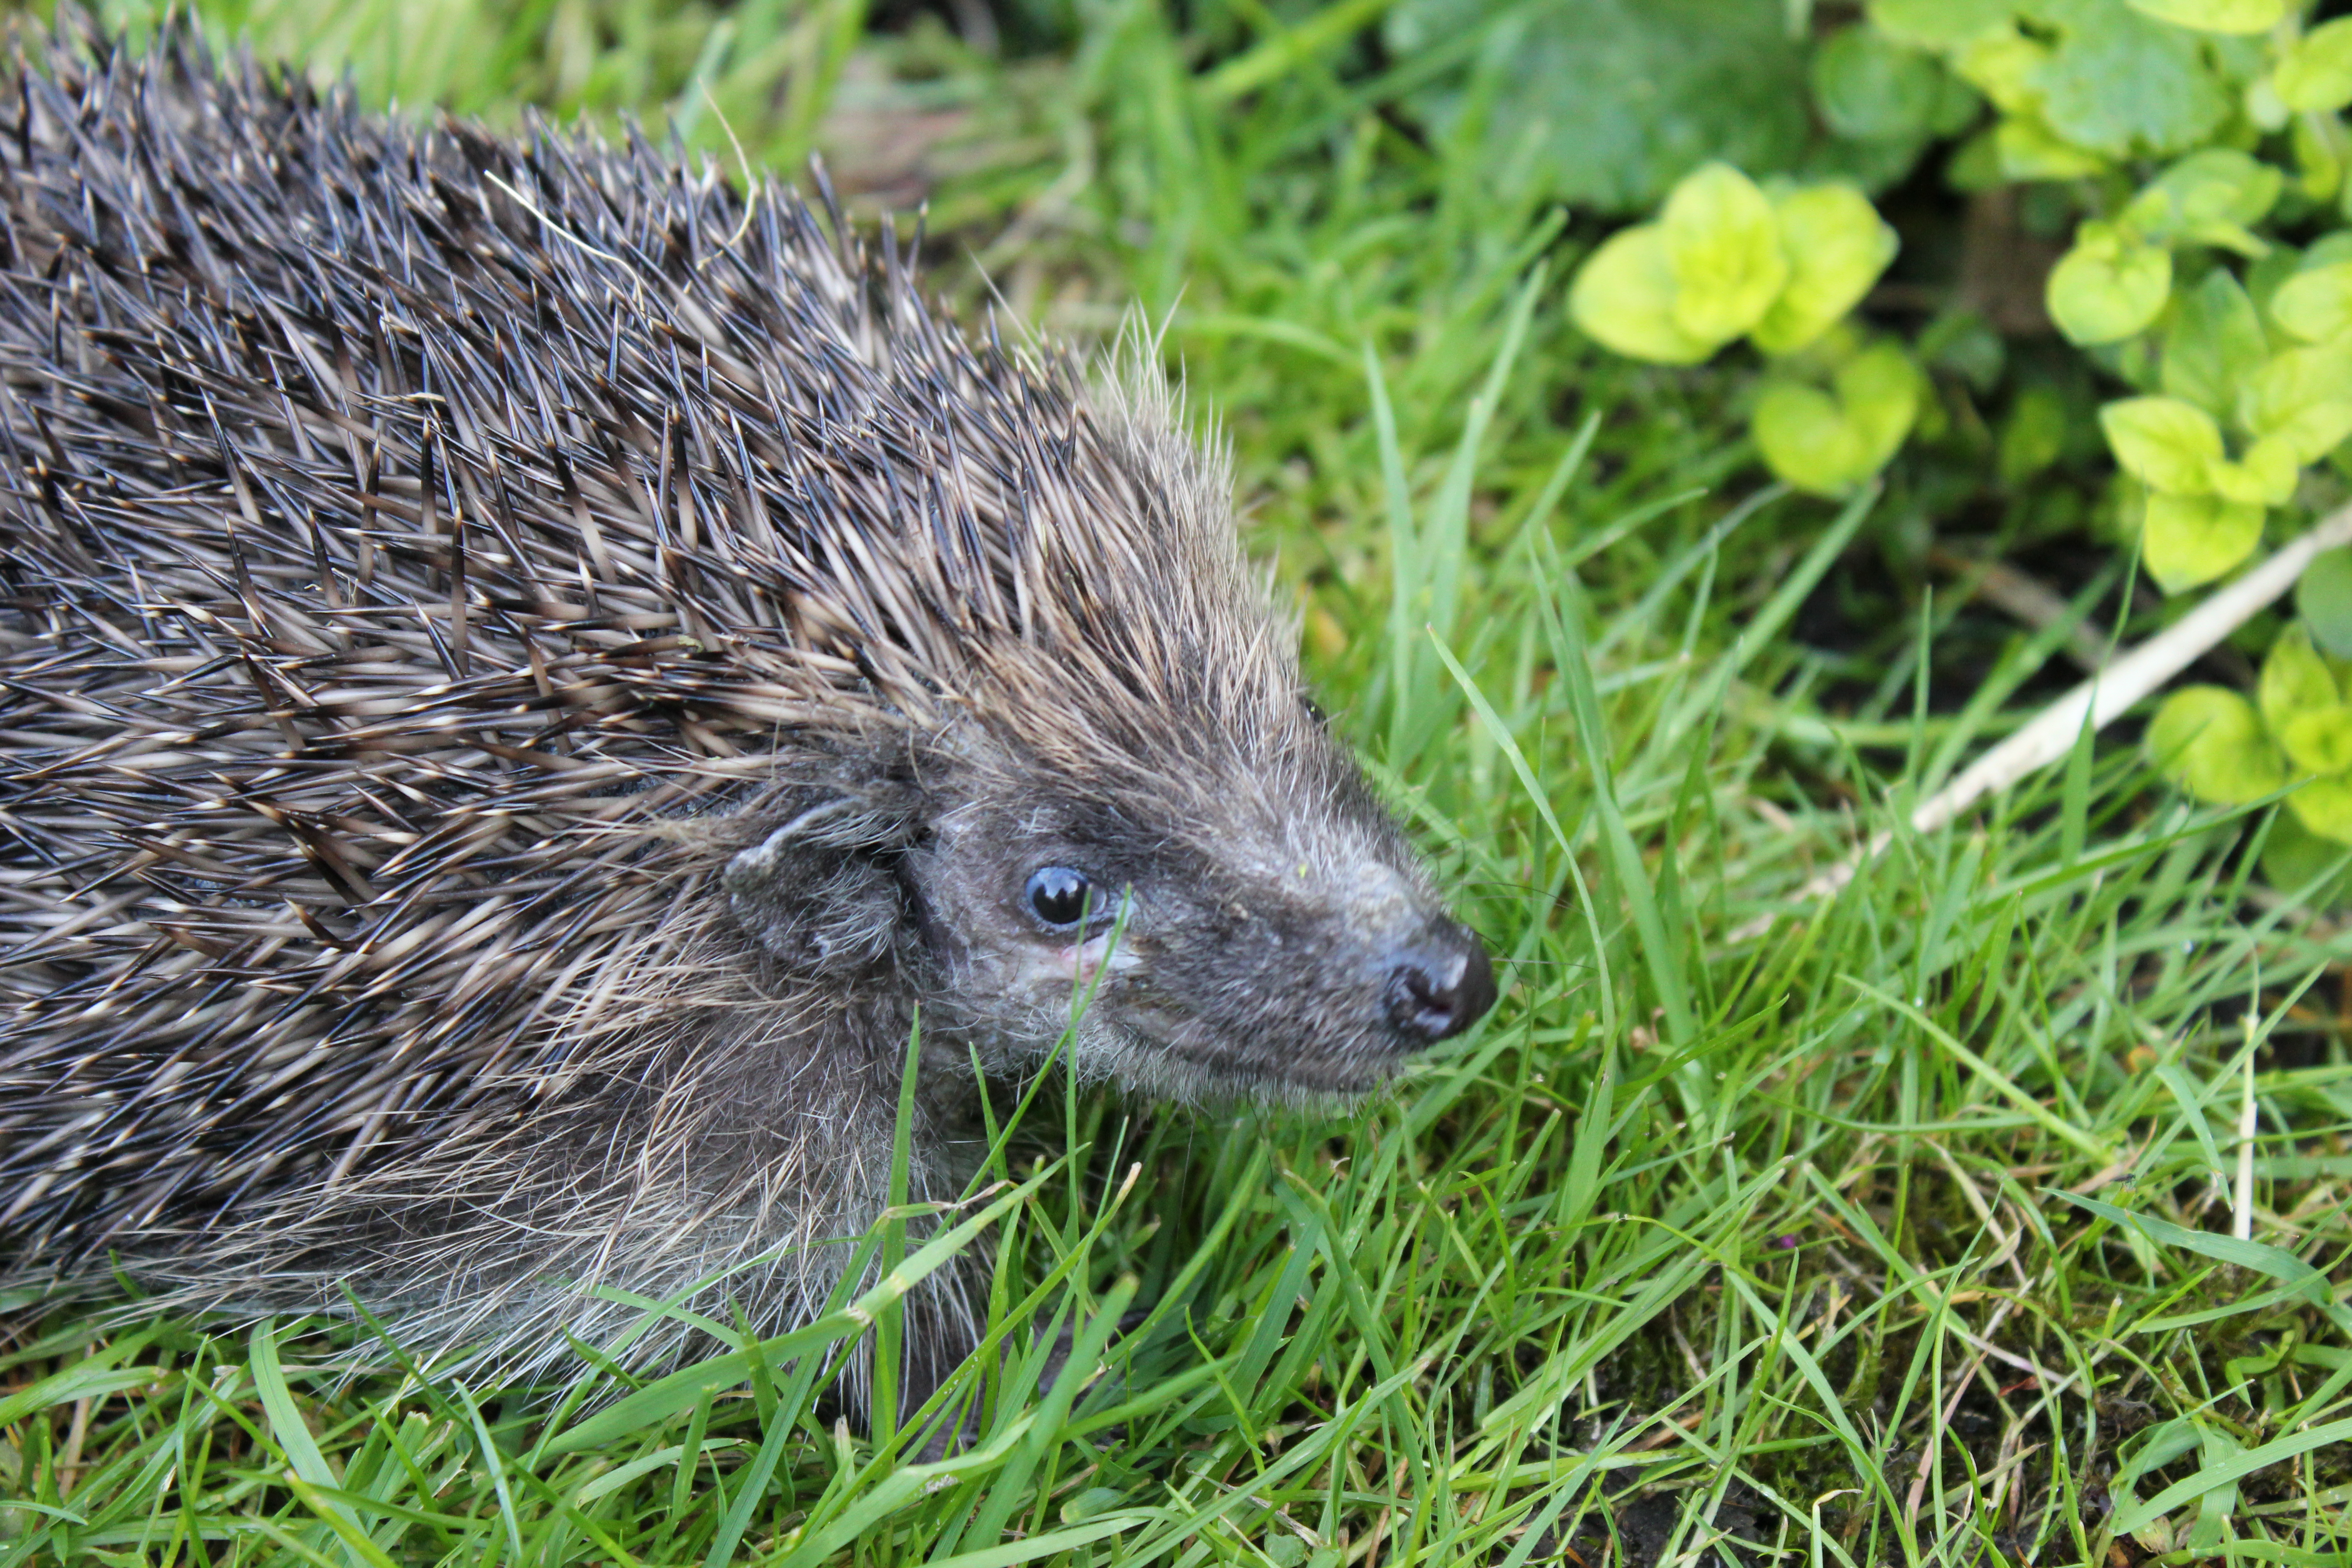 Hedgehog in garden